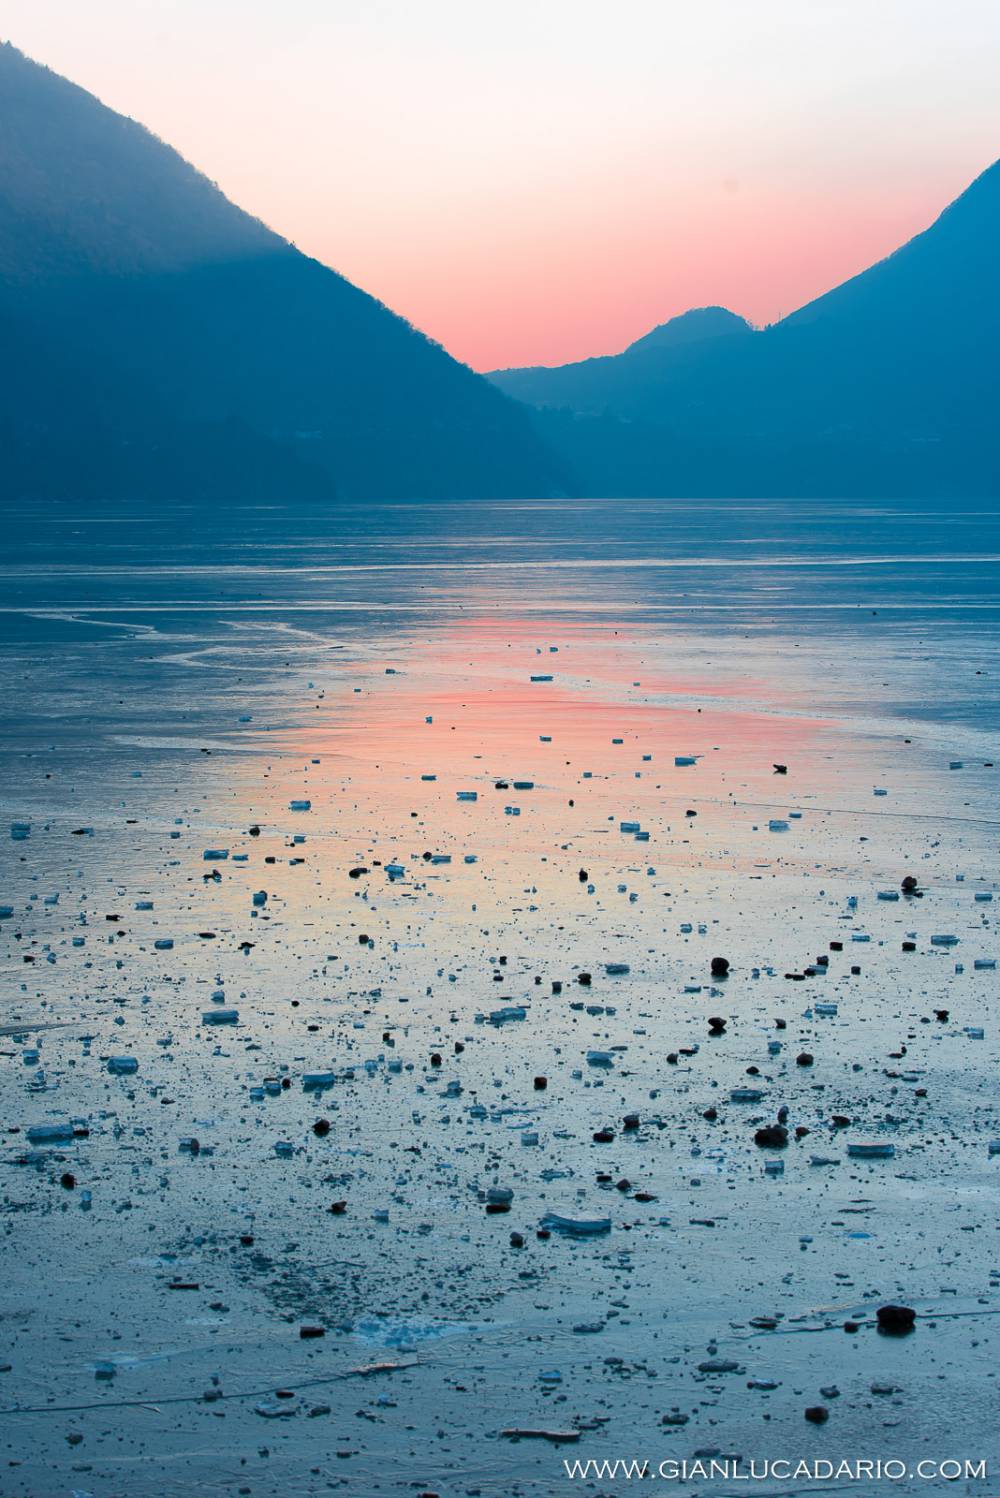 Al lago di Santa Croce - foto 7 - Gianluca Dario Photography